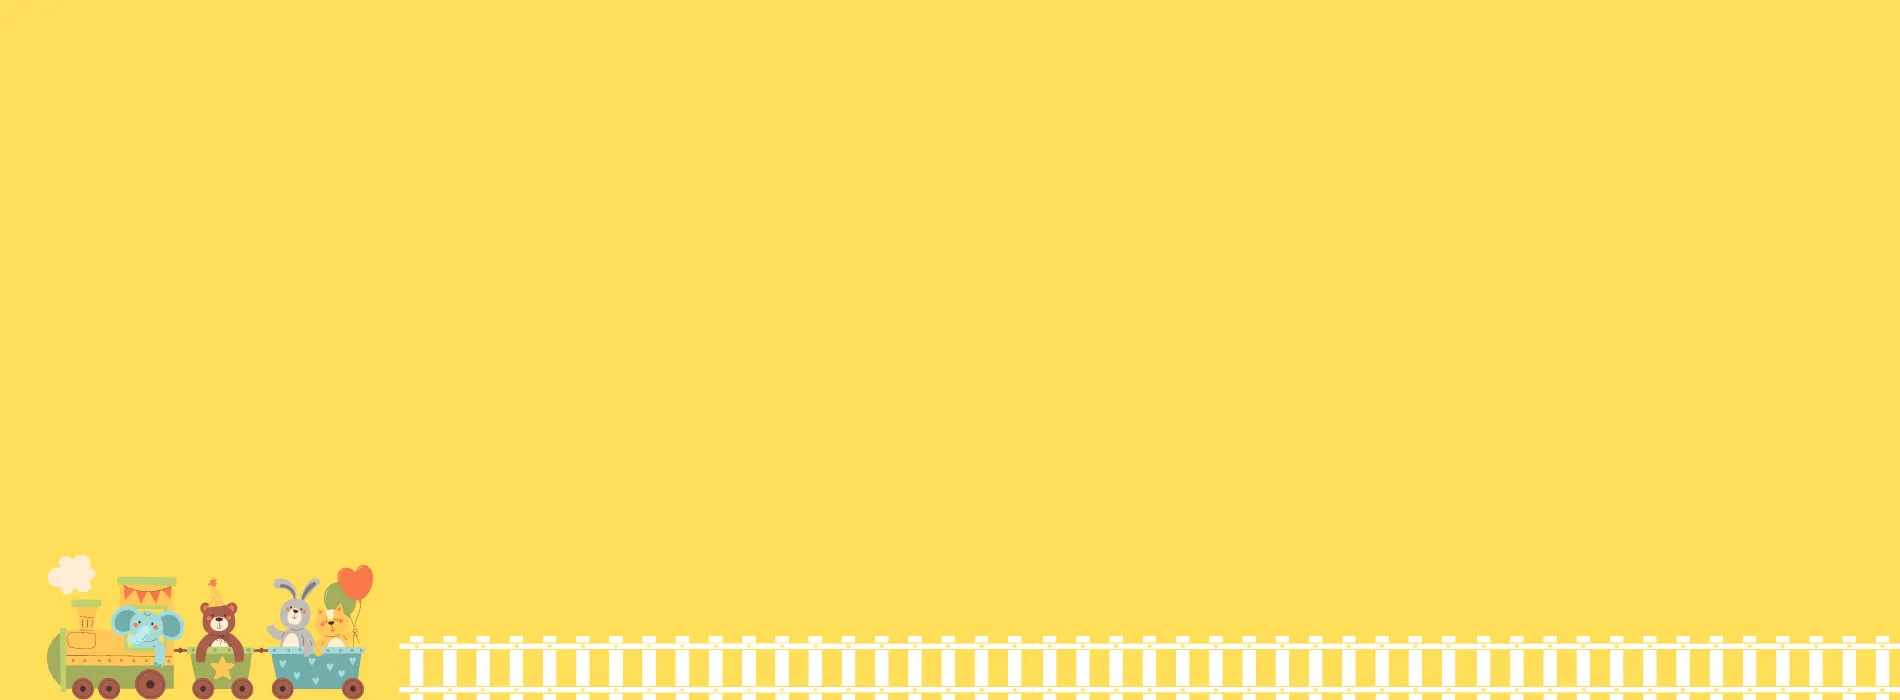 電車のイラストで背景黄色